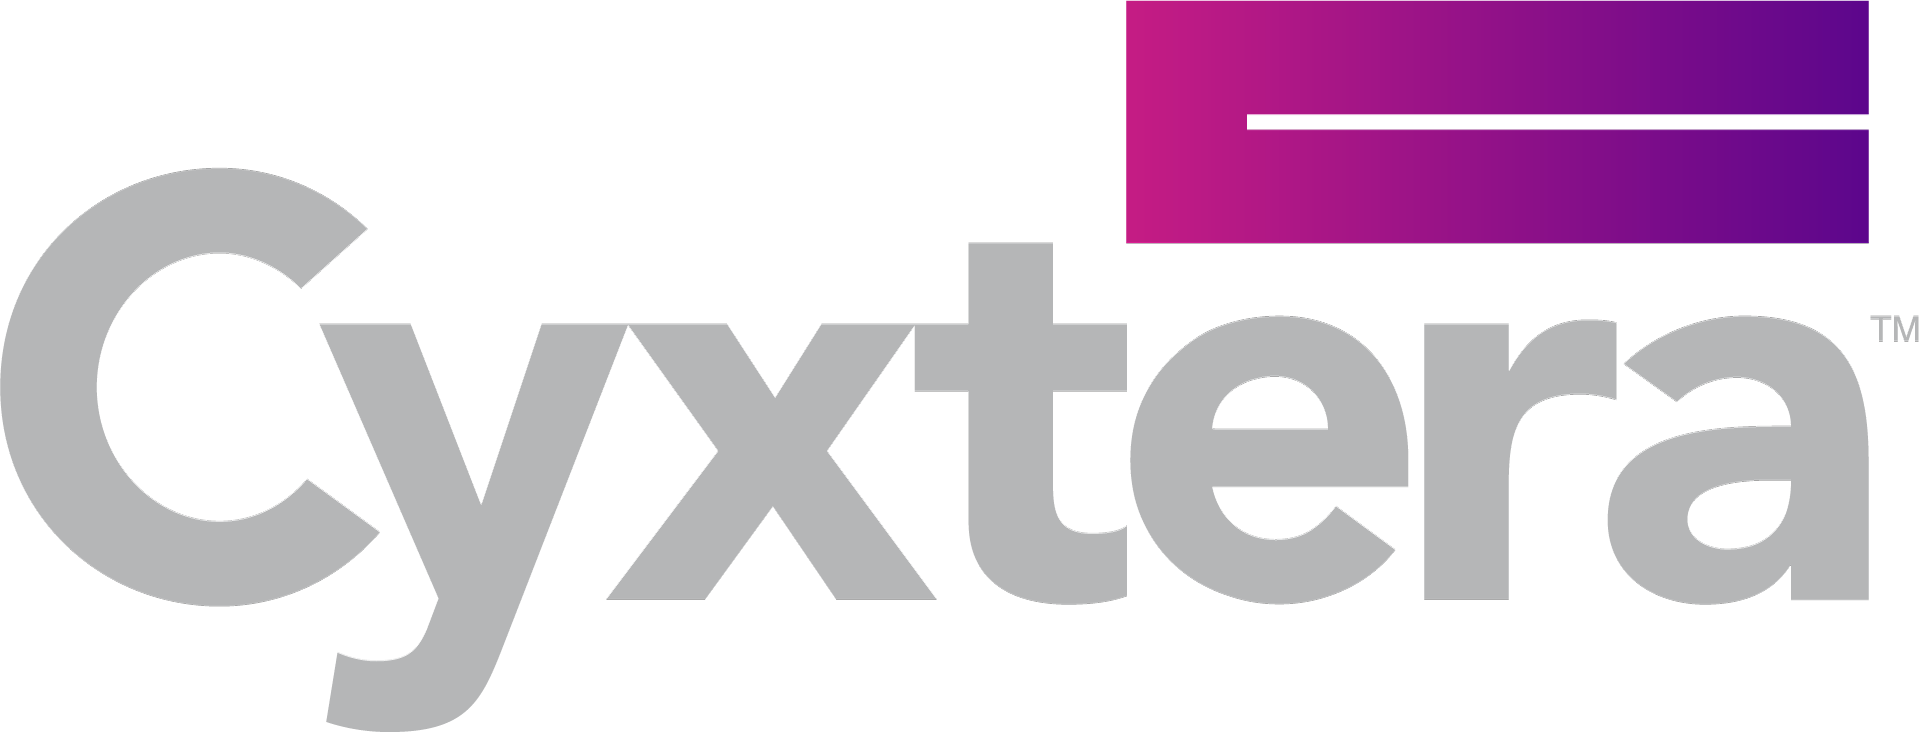 Cyxtera_Logo